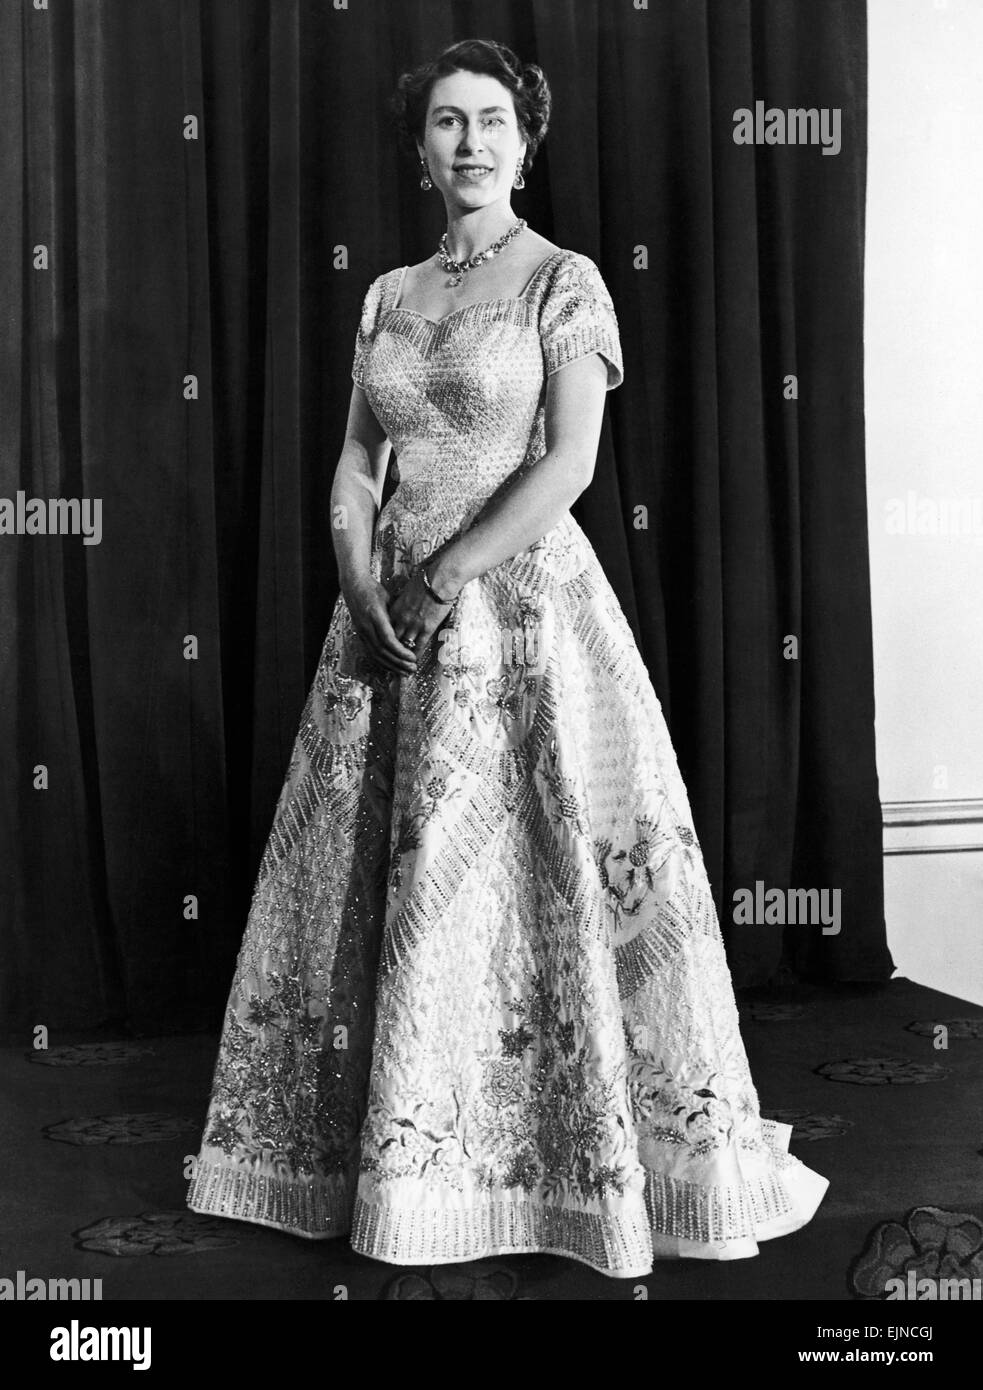 Queen Elizabeth offizielle Porträt für die Krönung 1953. Lokalen Caption *** 00101104 Stockfoto